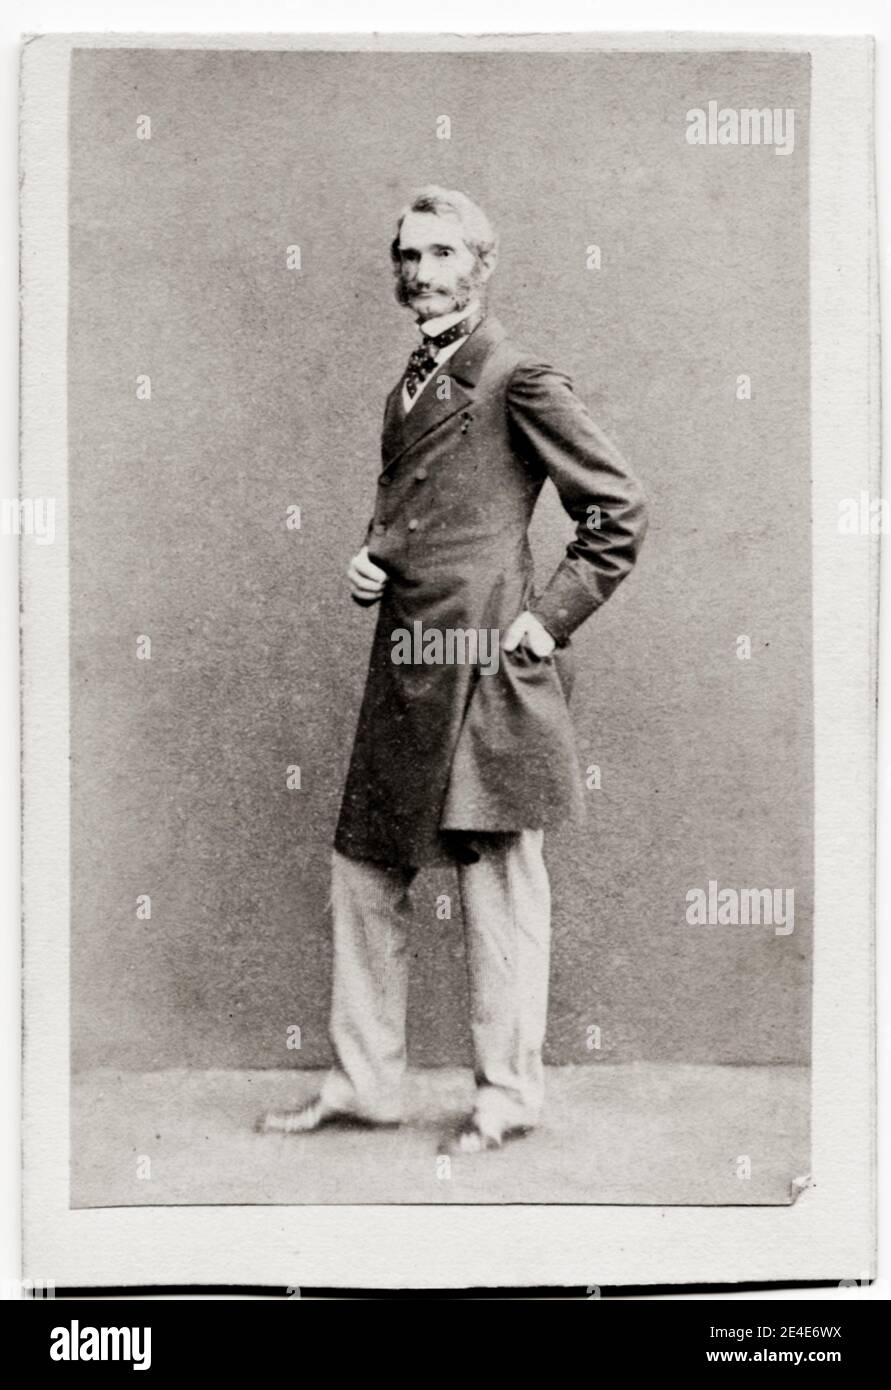 Fotografia d'epoca del XIX secolo: Il generale Sir James Hope Grant, GCB era un ufficiale dell'esercito britannico. Servì nella prima guerra dell'Opium, nella prima guerra anglo-sikh, nel Mutiny indiano del 1857 e nella seconda guerra dell'Opium. Foto Stock